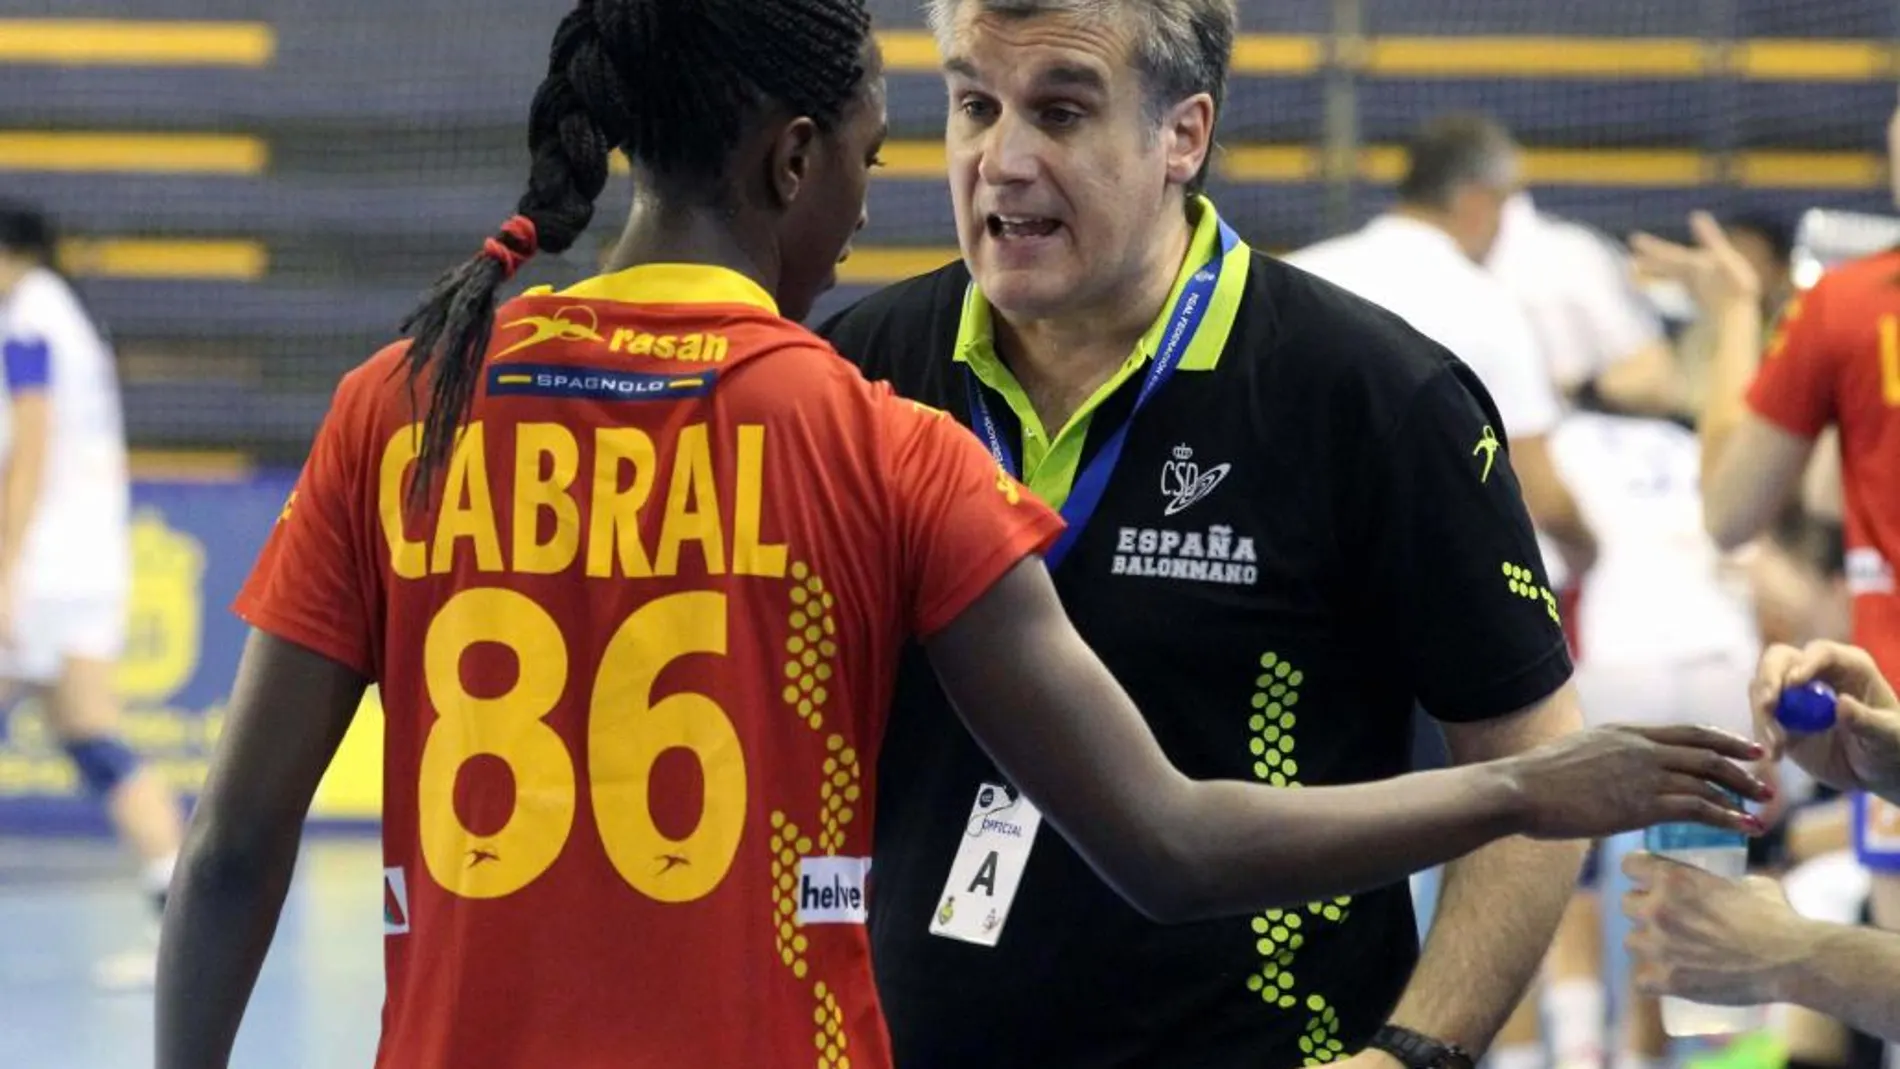 El seleccionador de balonmano femenino de España, Jorge Dueñas, da instrucciones a la jugadora Alexandrina Cabral